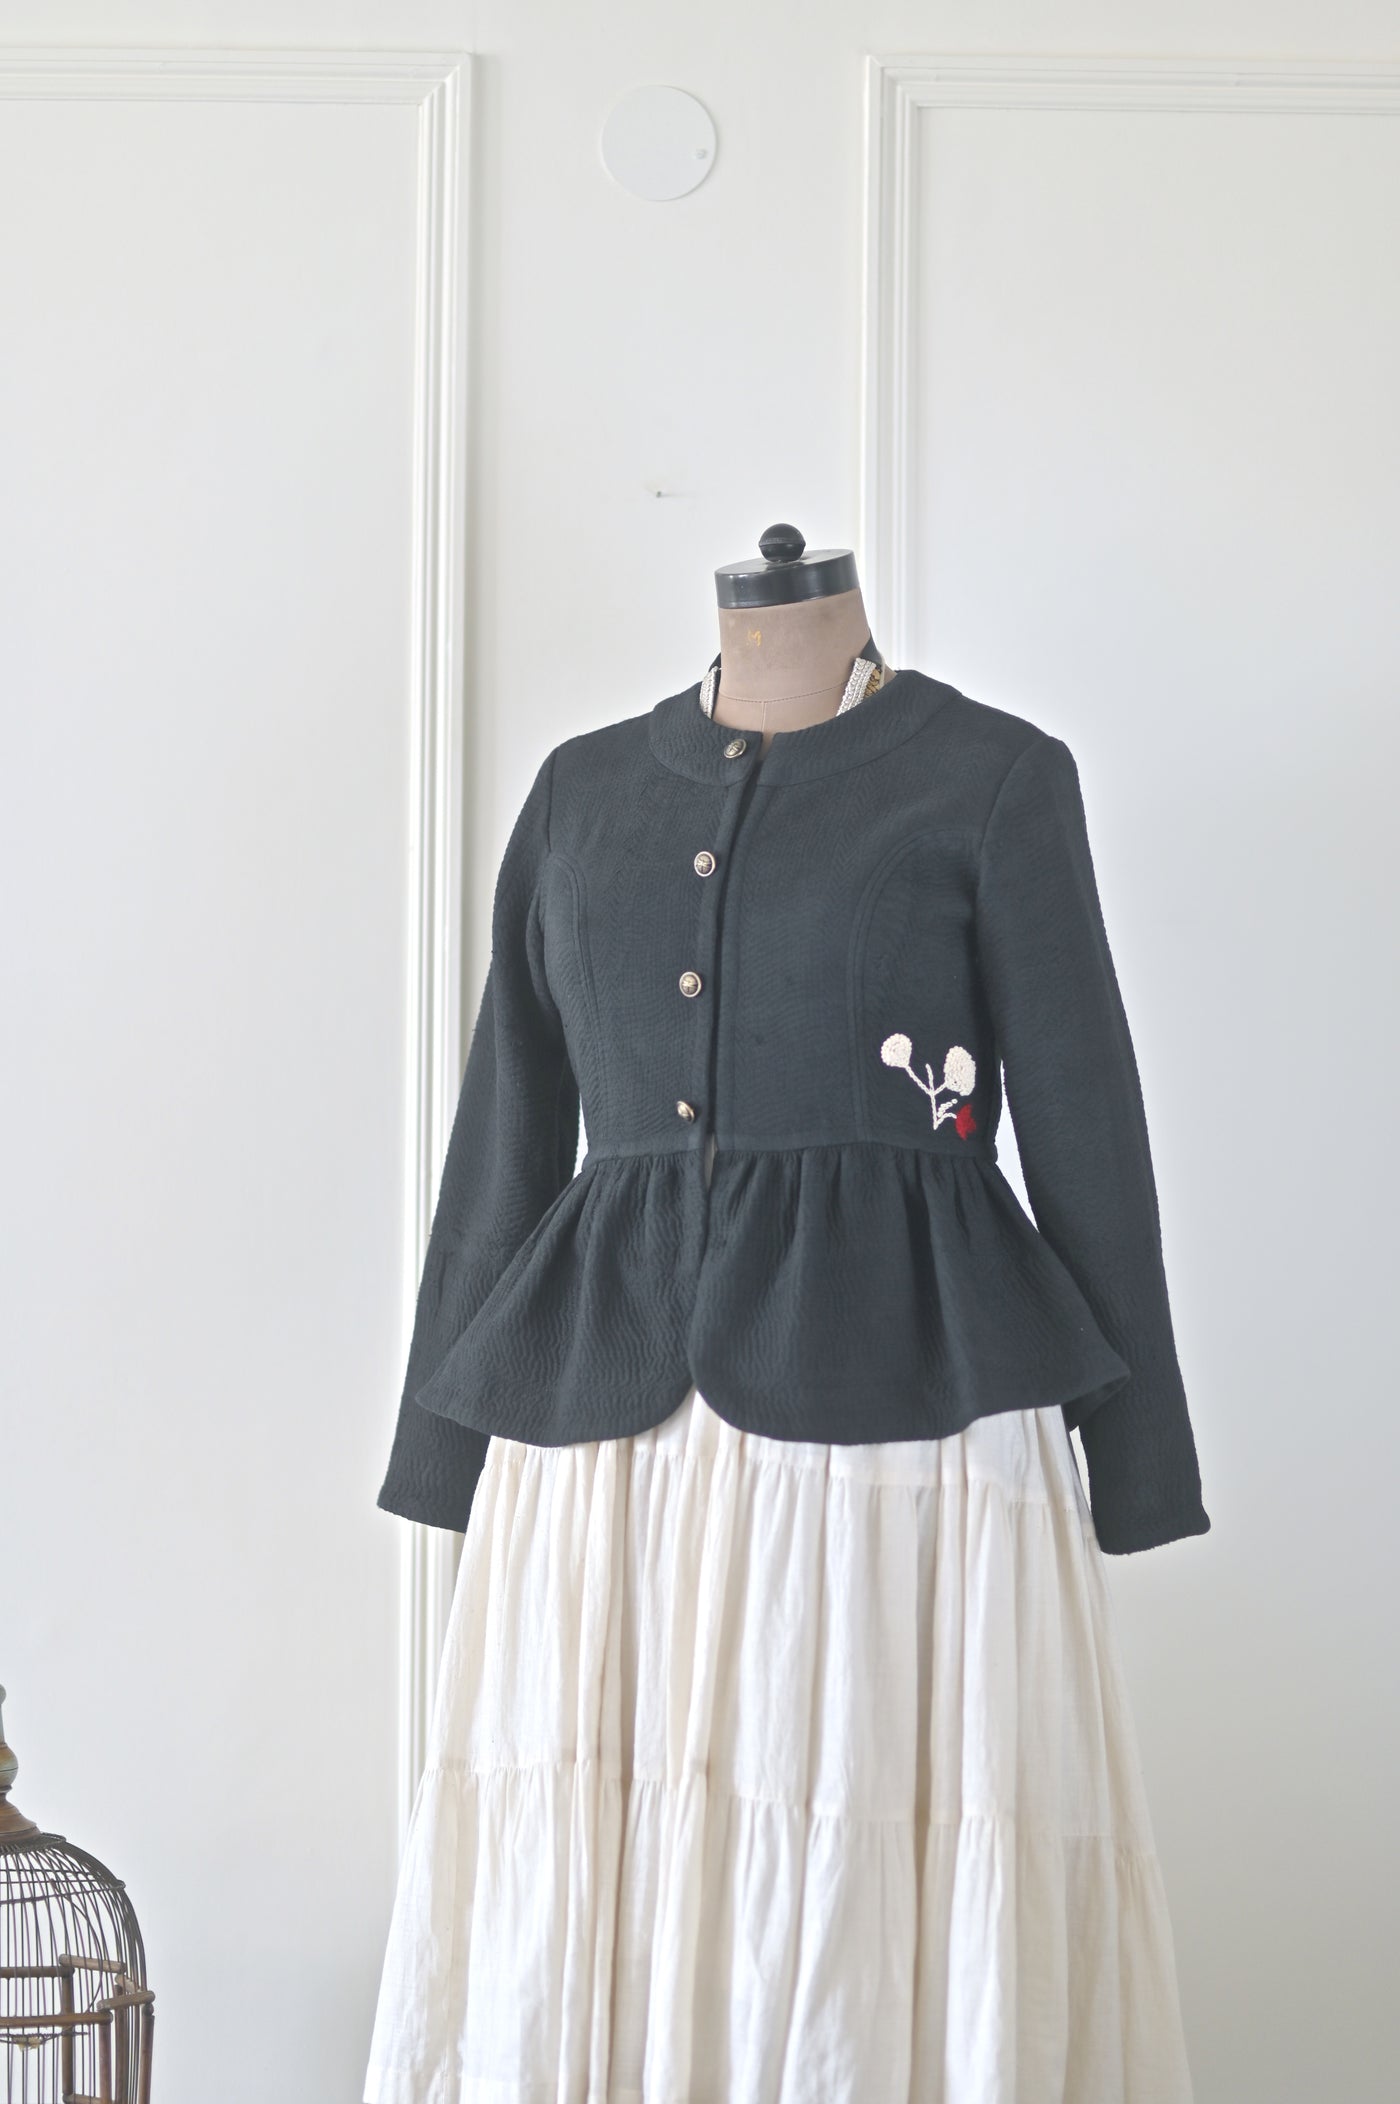 Ingrid, Size Large,  Vintage kantha Peplum Jacket with Hand Embroidery